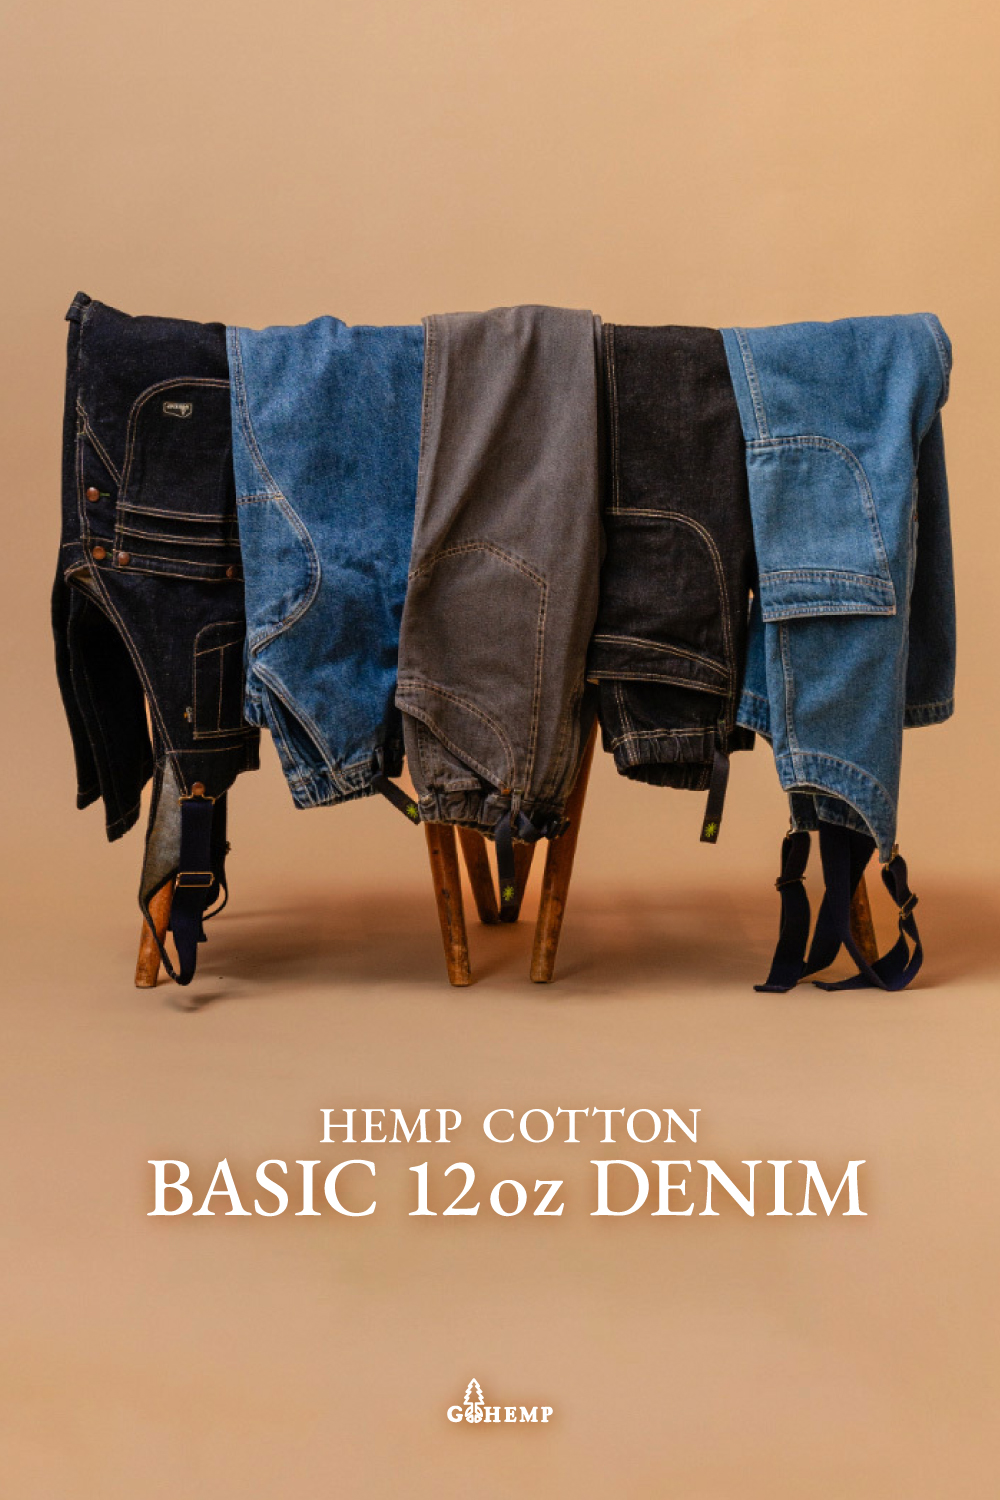 HEMP COTTON BASIC 12oz DENIM